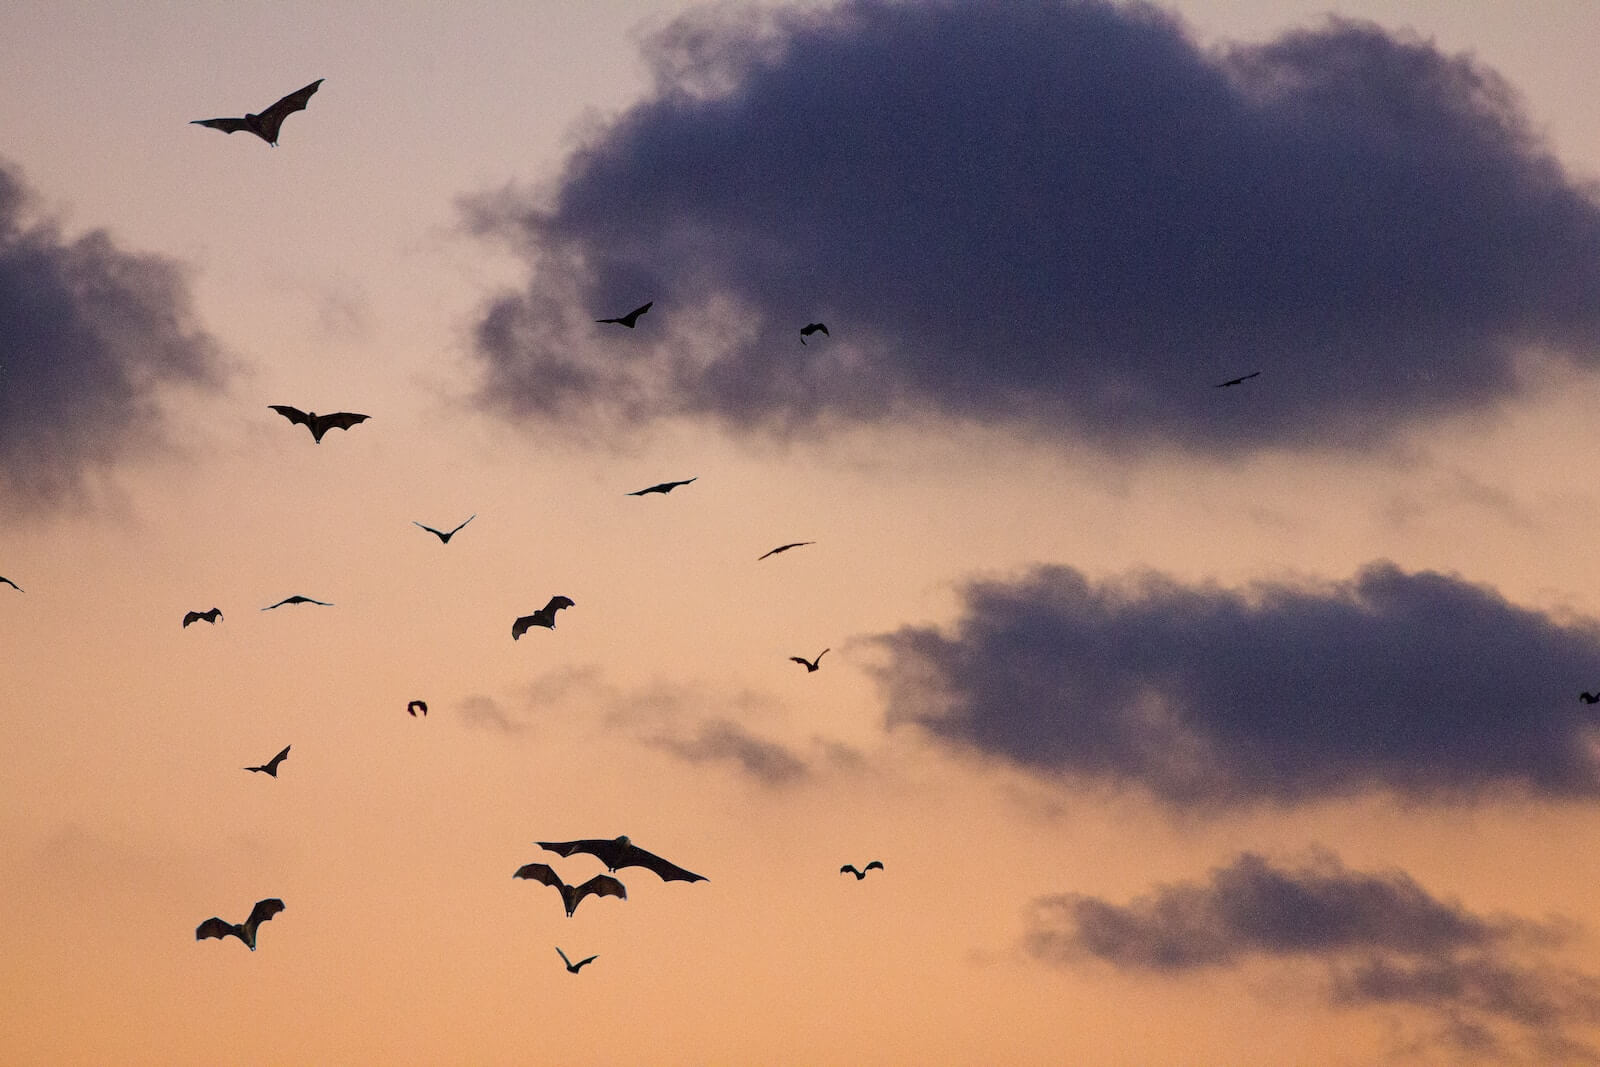 Bats in sky photo by Clément Falize on Unsplash